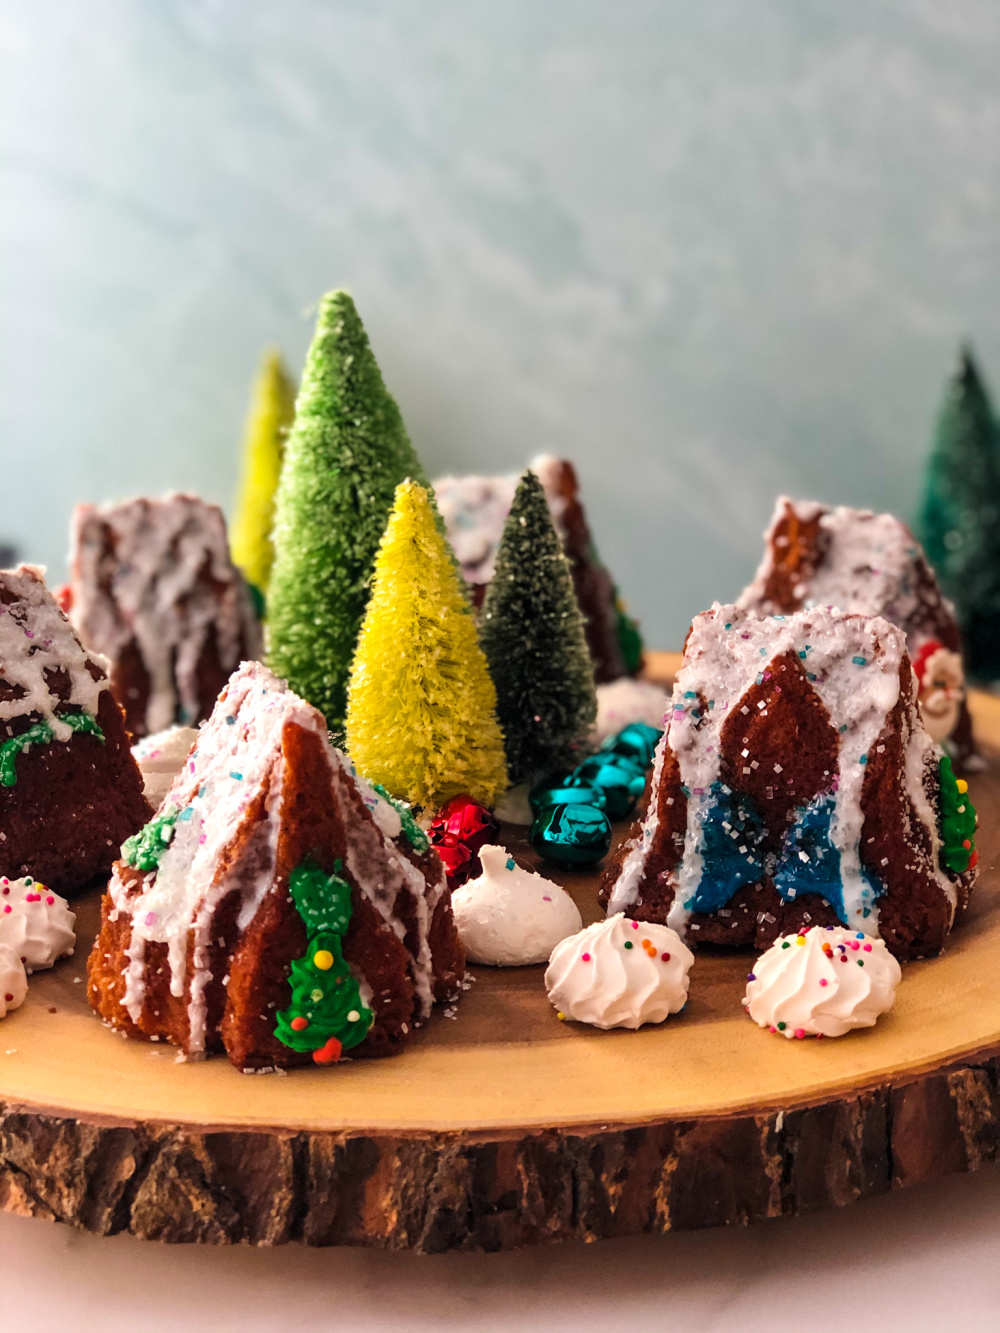 La configuración del pueblo navideño comestible requiere de una superficie de madera, merengues y cascabeles de colores.